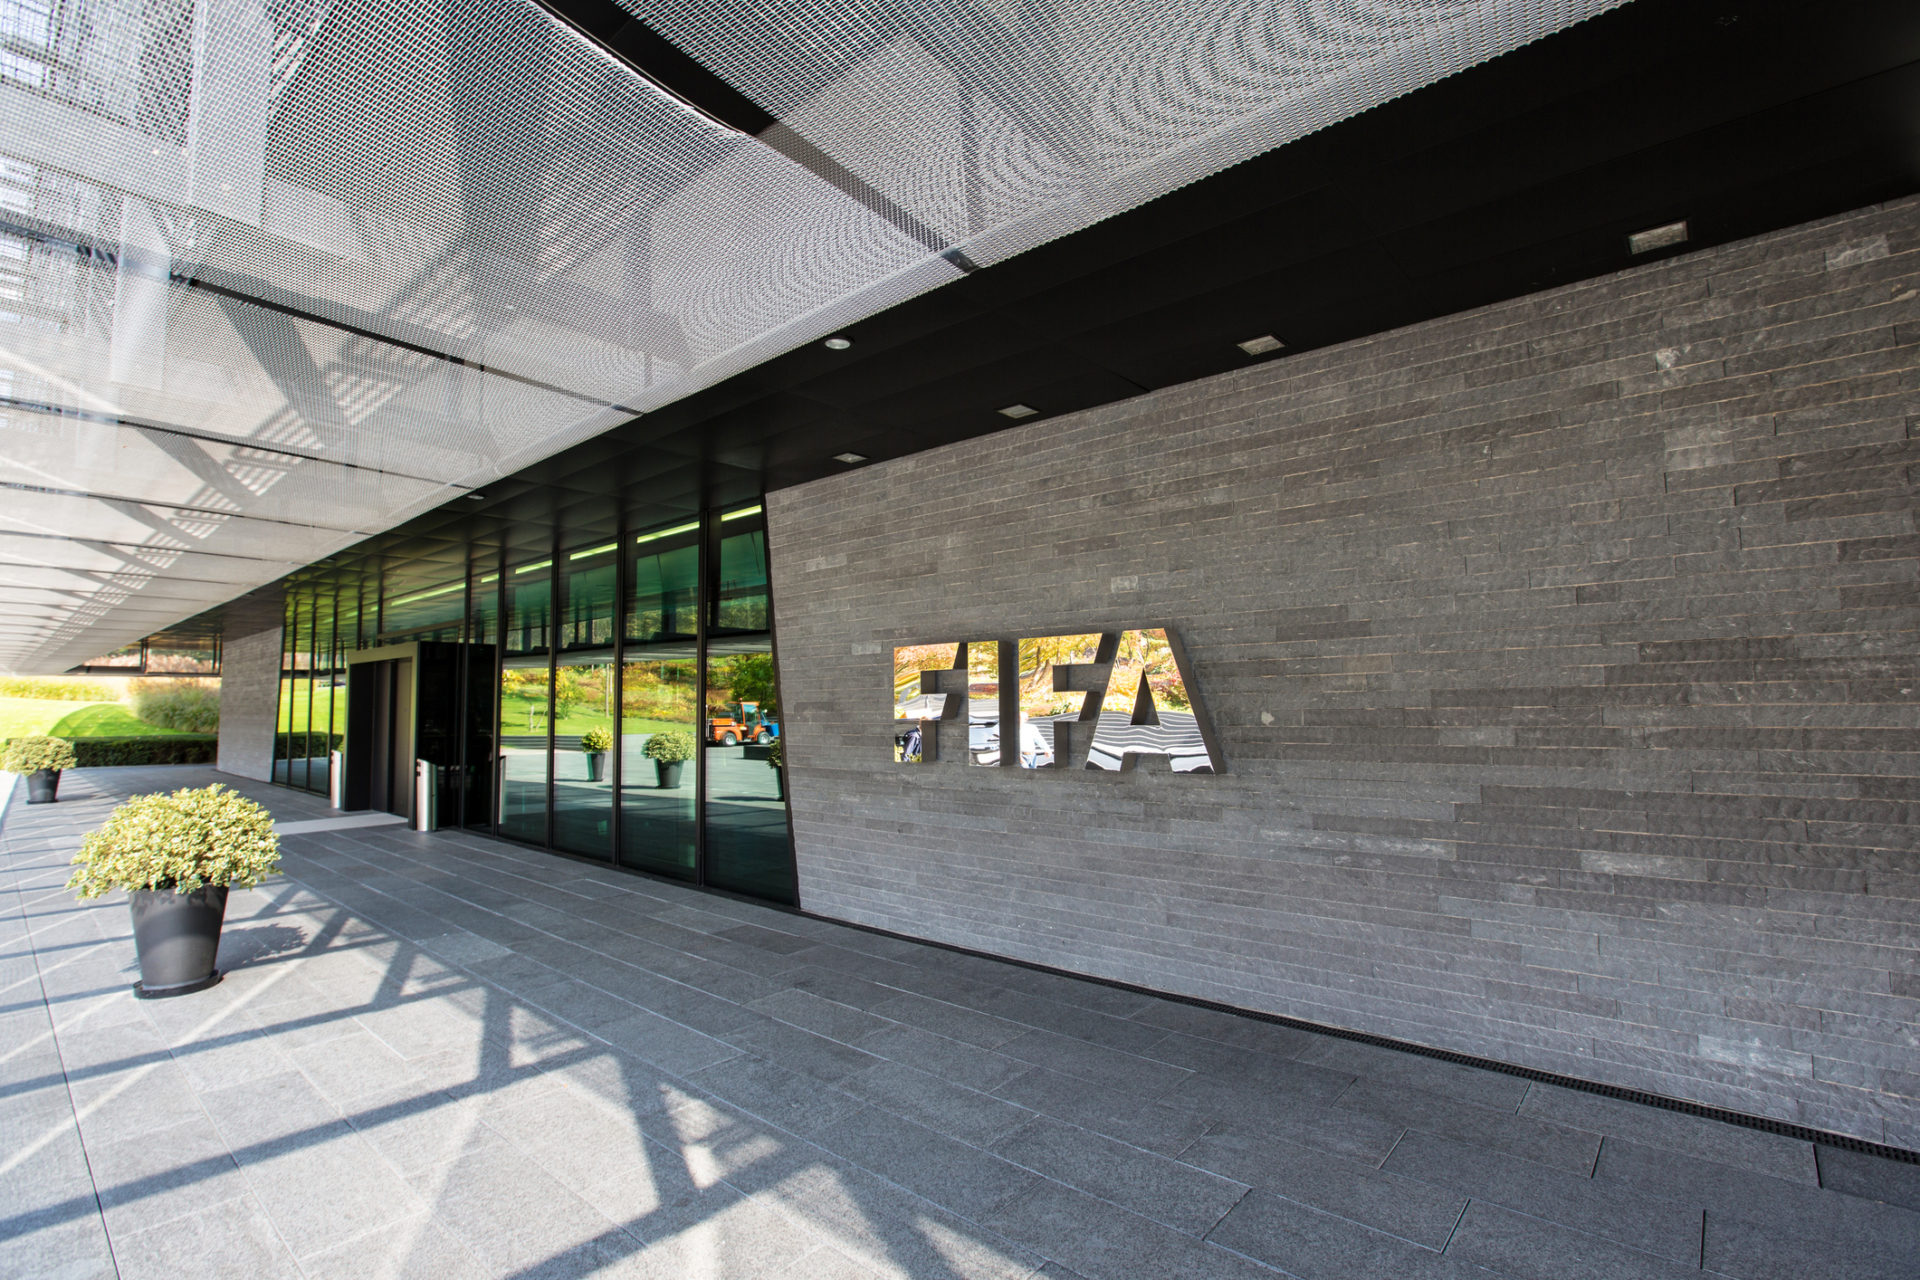 FIFA+: Plataforma grátis para transmissão de jogos de futebol